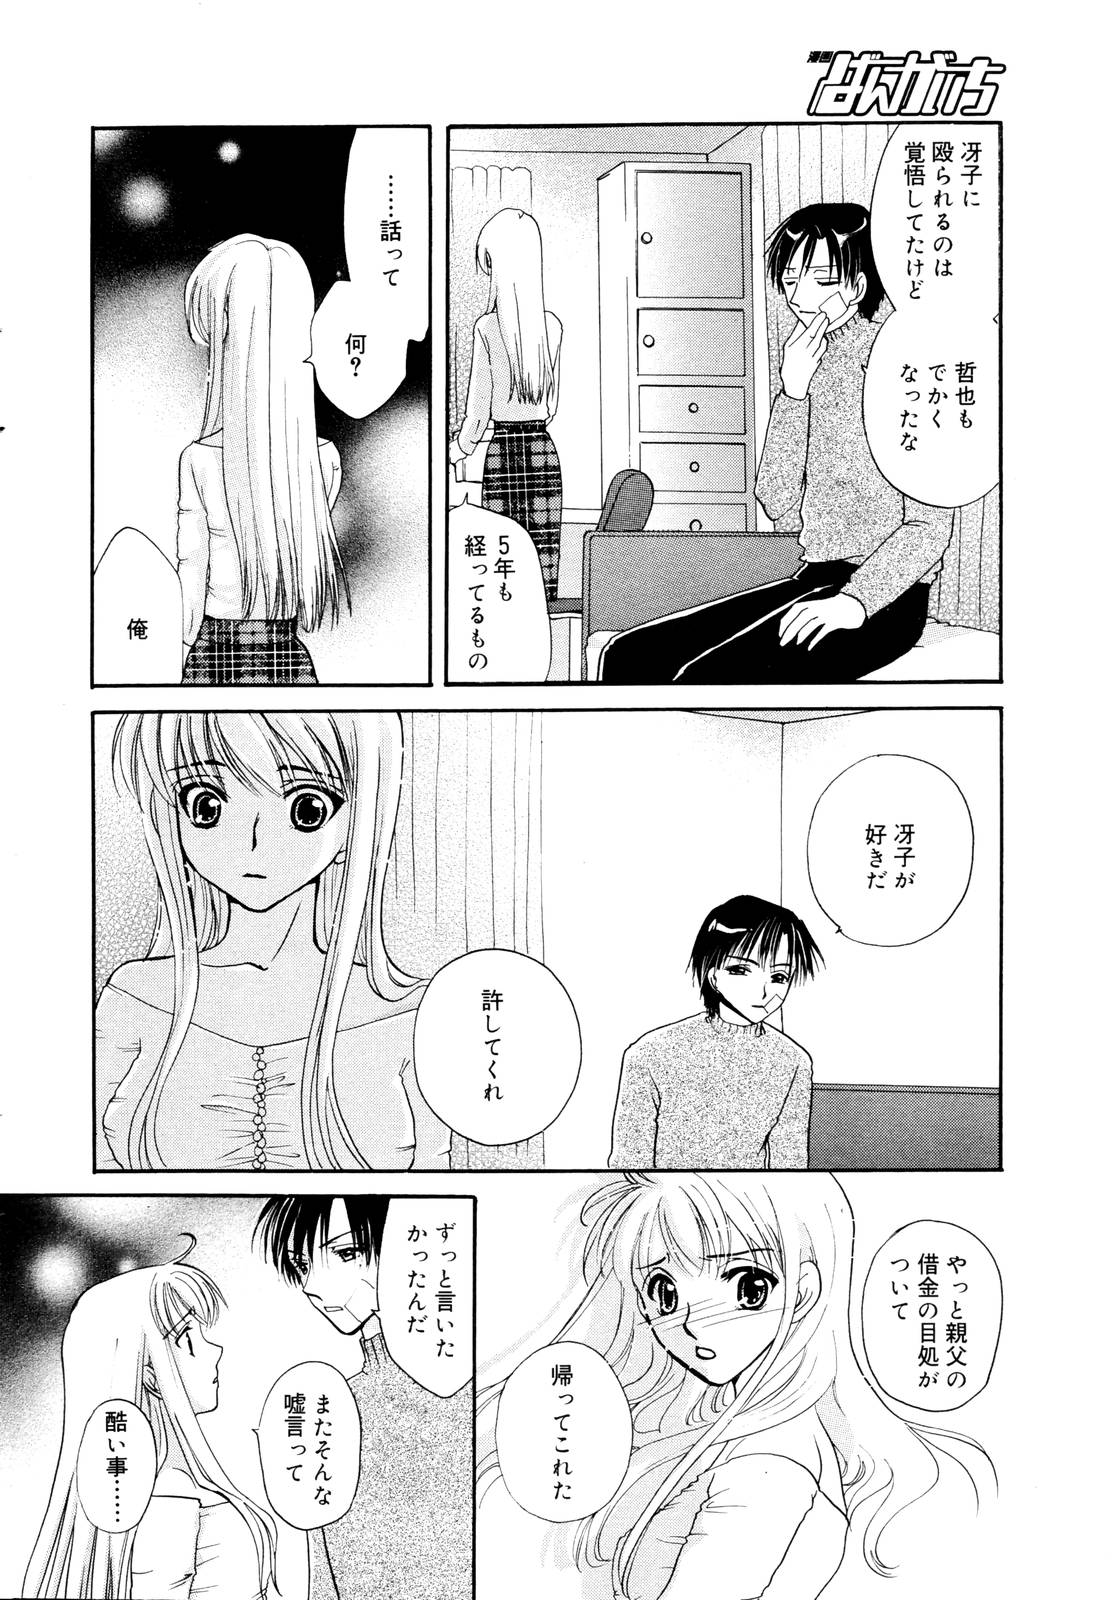 Manga Bangaichi 2006-01 page 14 full